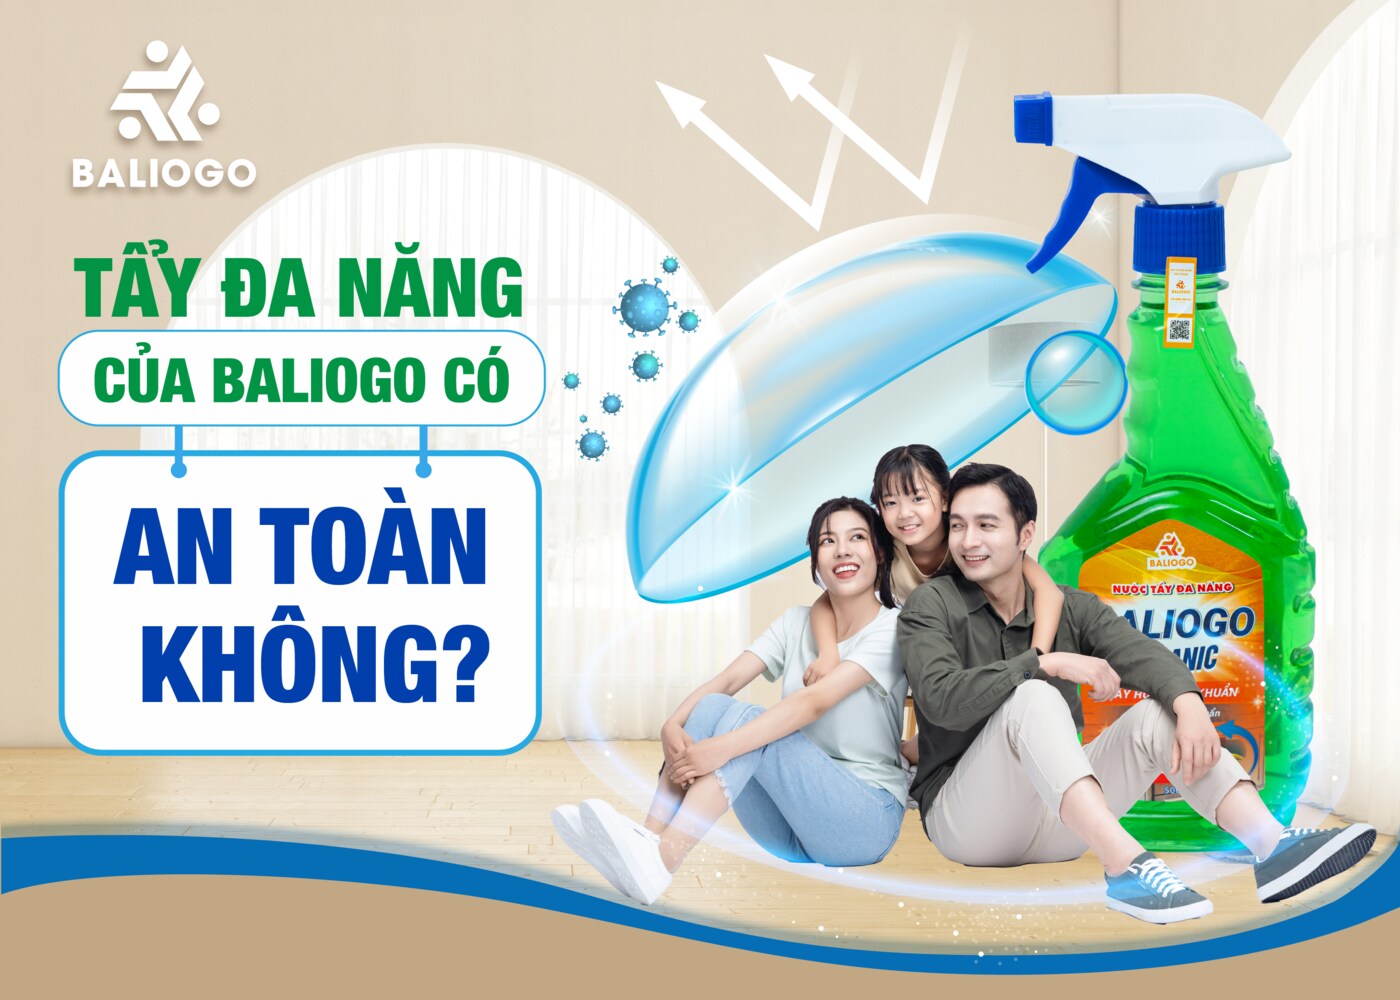 Baliogo - Chuyên sản xuất nước rửa chén an toàn, tiết kiệm